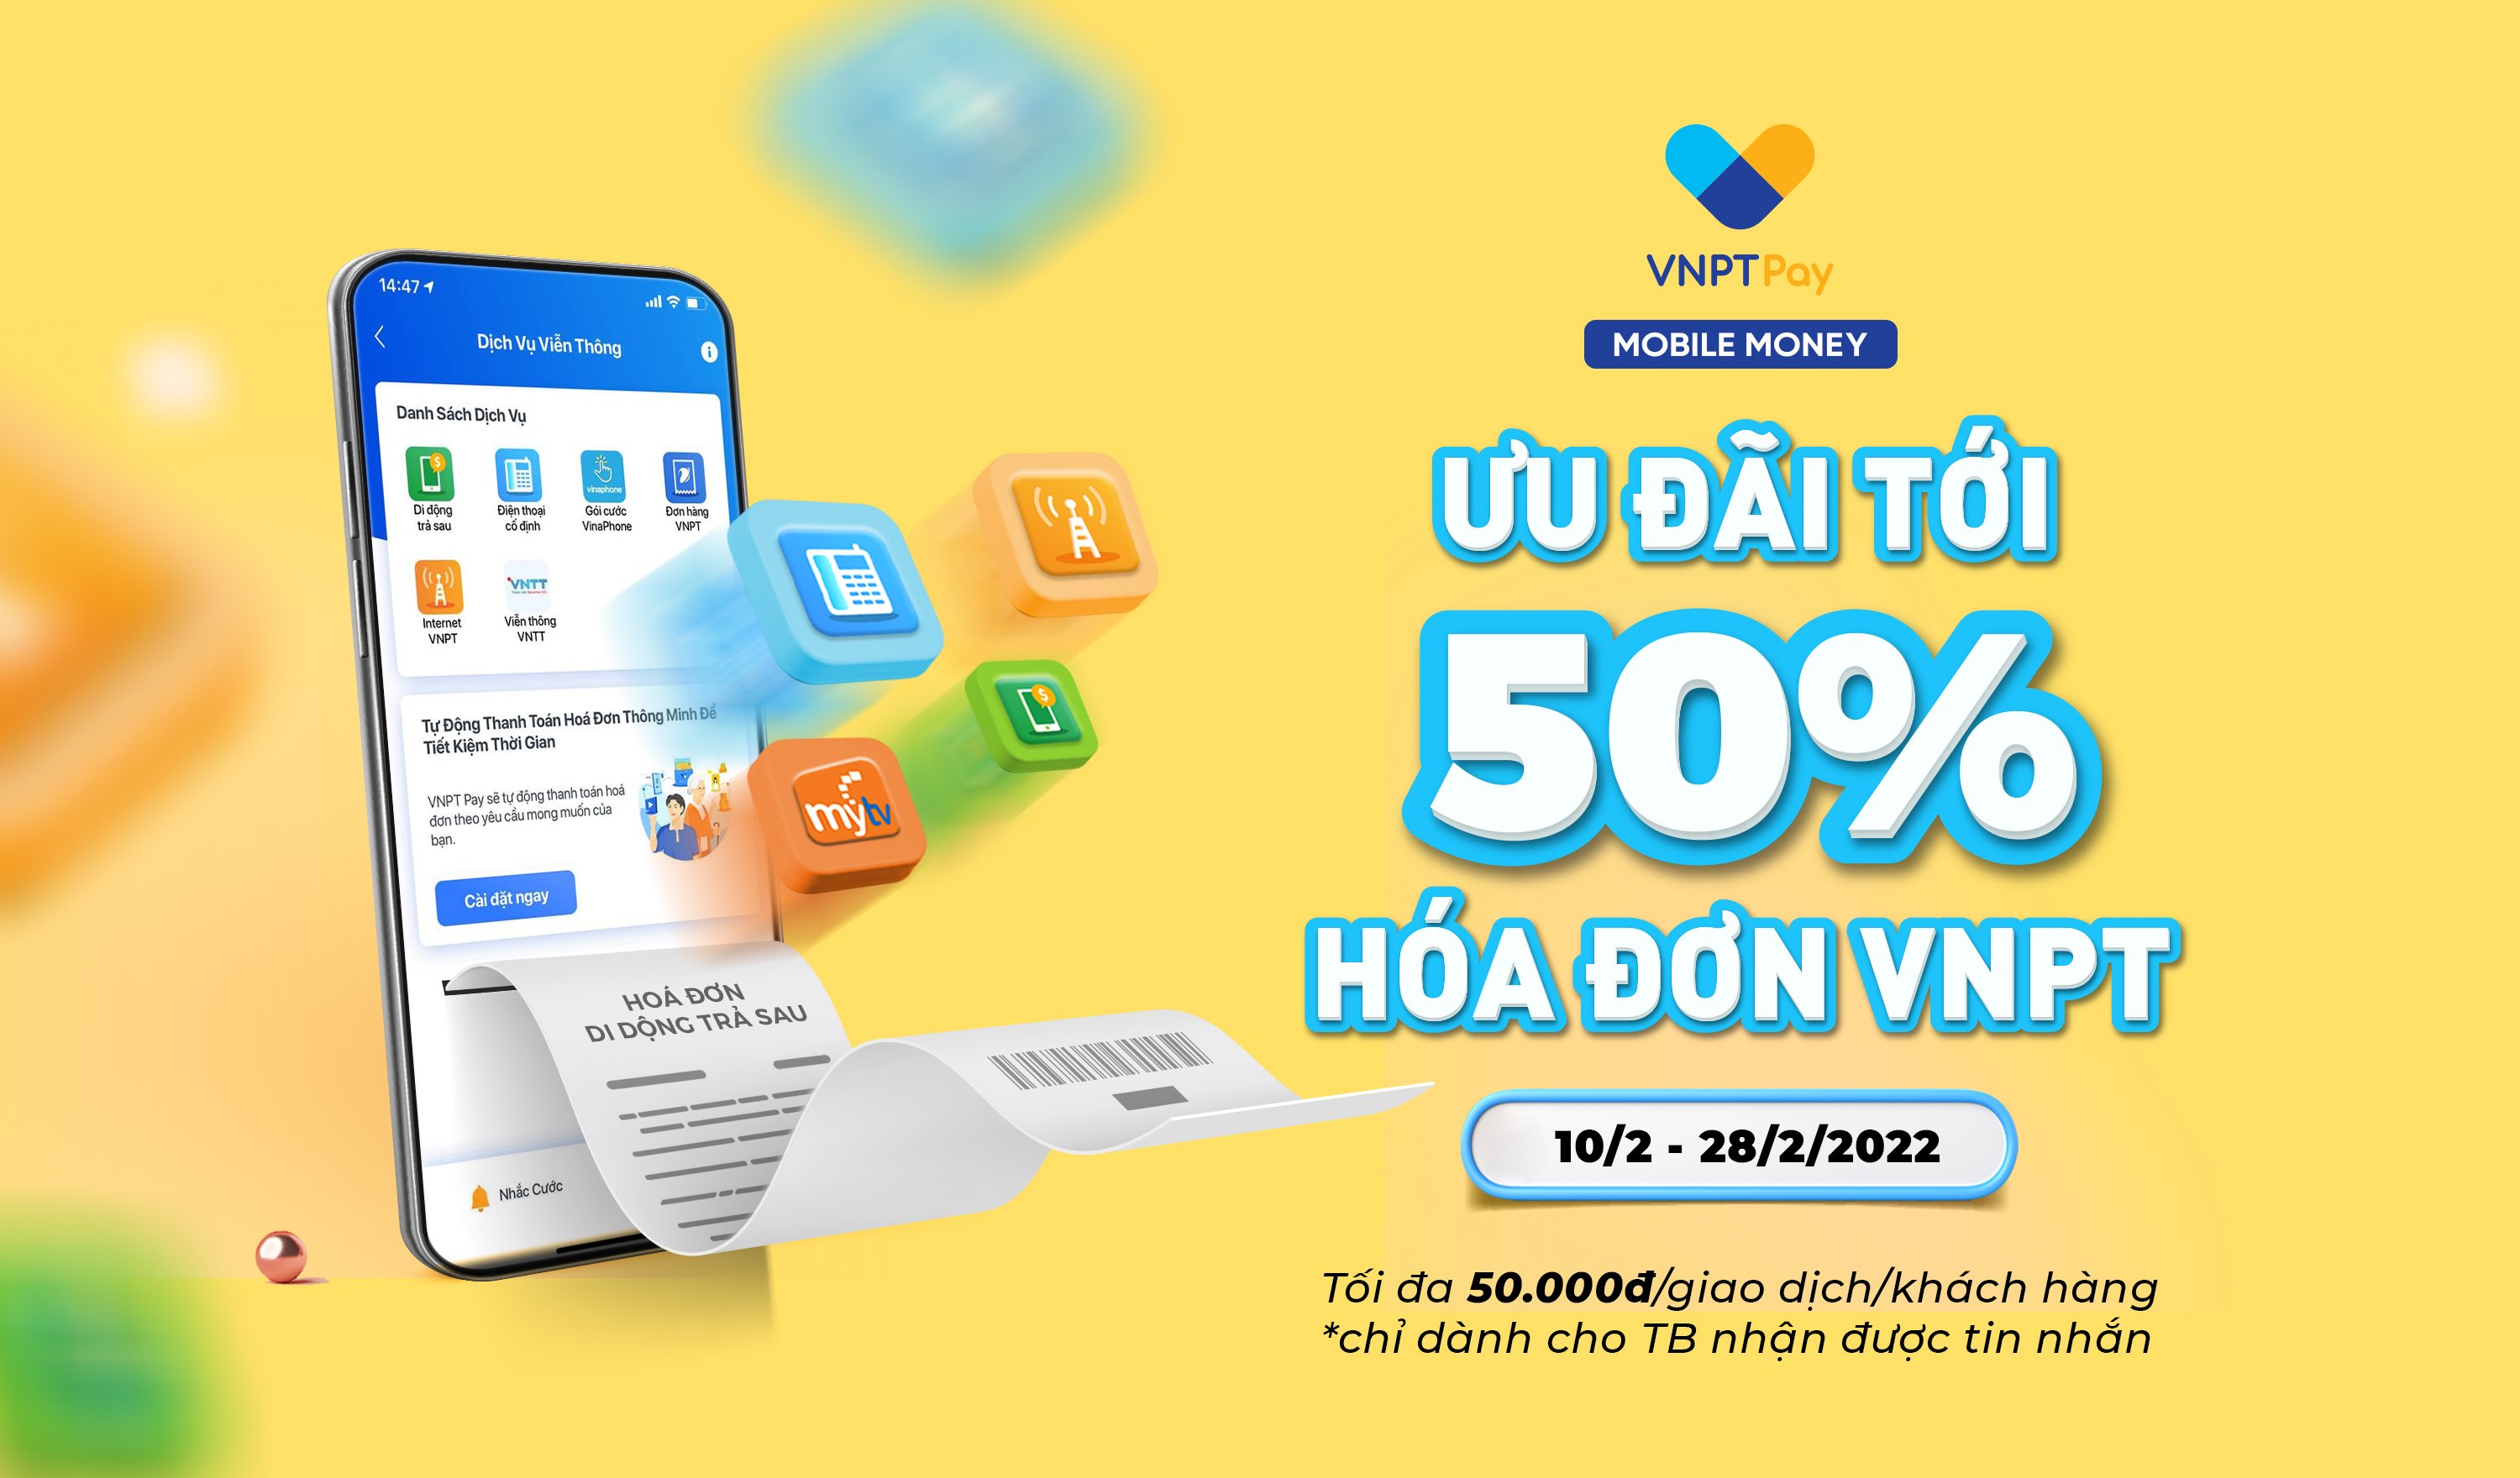 Mobile Money ưu đãi tới 50% hóa đơn VNPT